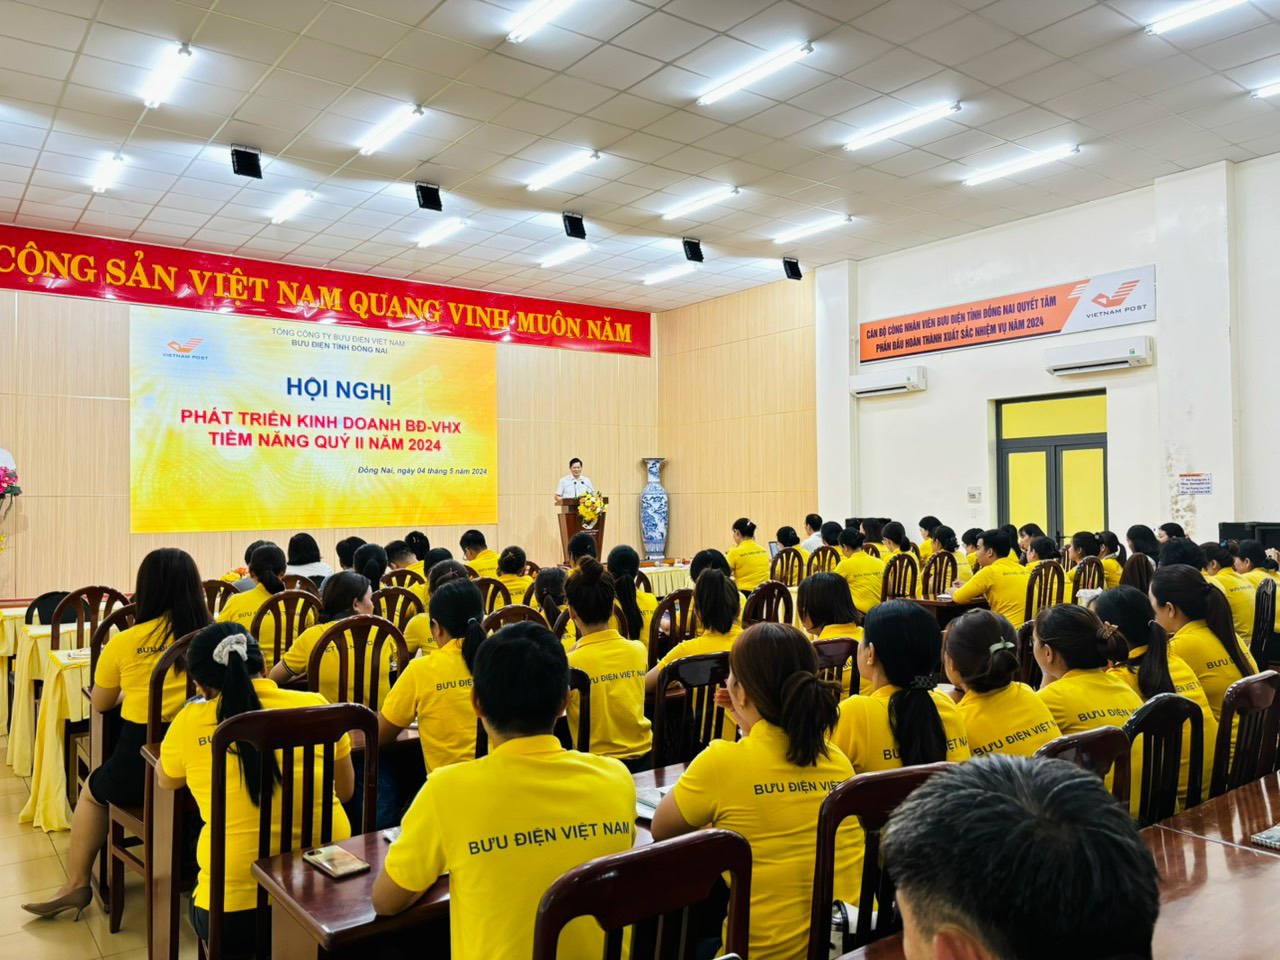 Bưu điện tỉnh Đồng Nai đã tổ chức Hội nghị Phát triển kinh doanh BĐ-VHX tiềm năng Quý II năm 2024